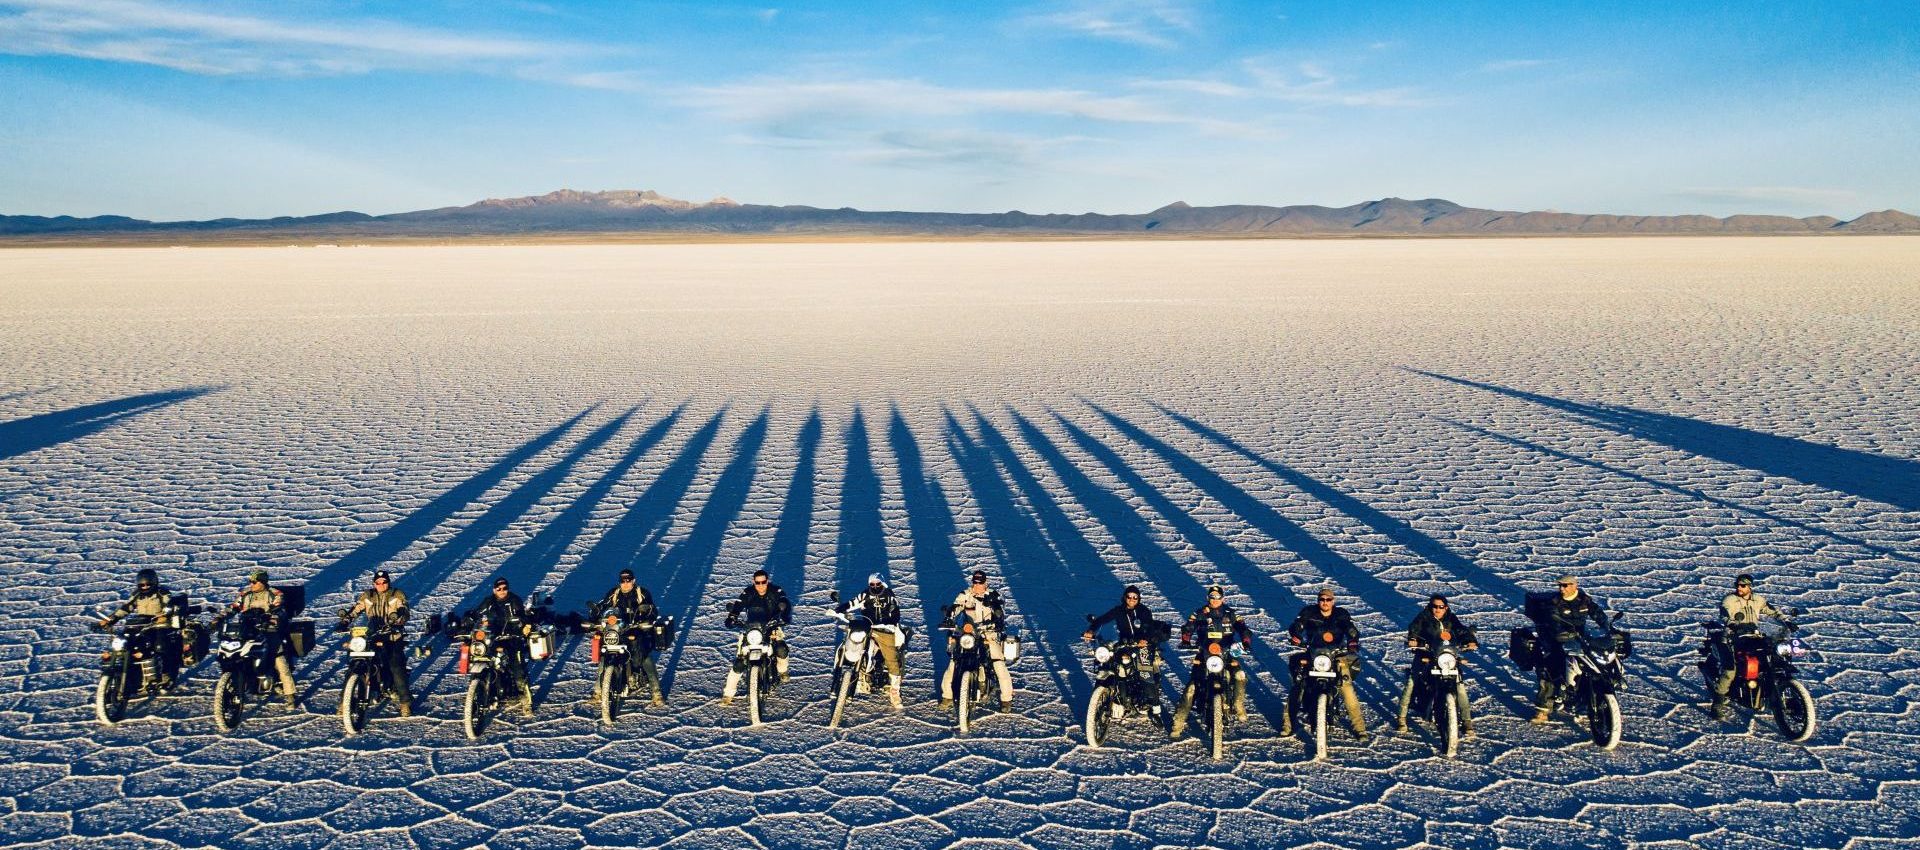 GoBeyond | Bolivia Motorcycle tour